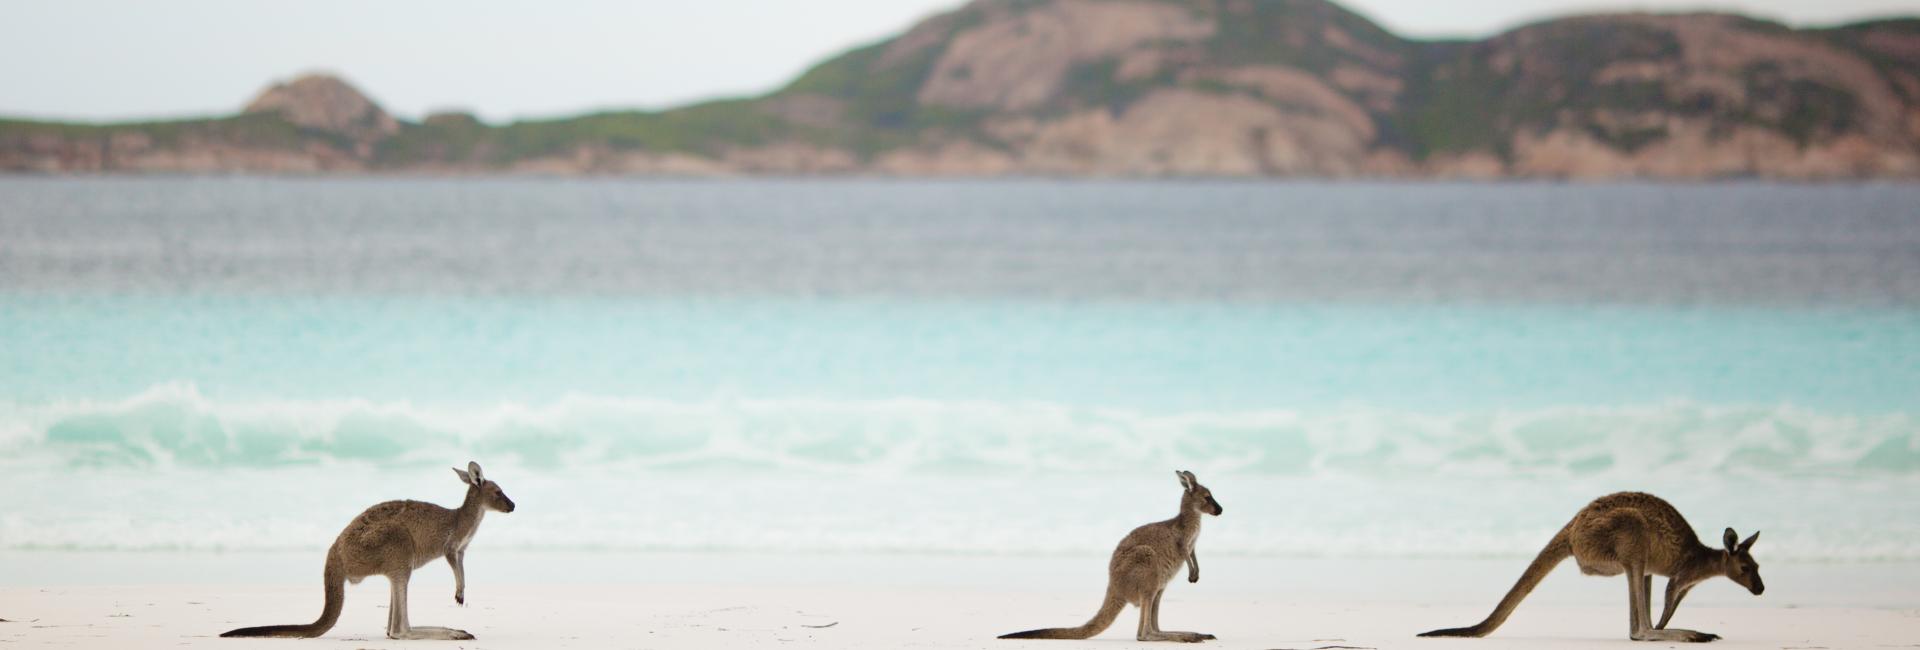 Kangaroos at Lucky Bay Esperance Jumbotron, image by Jarrad Seng